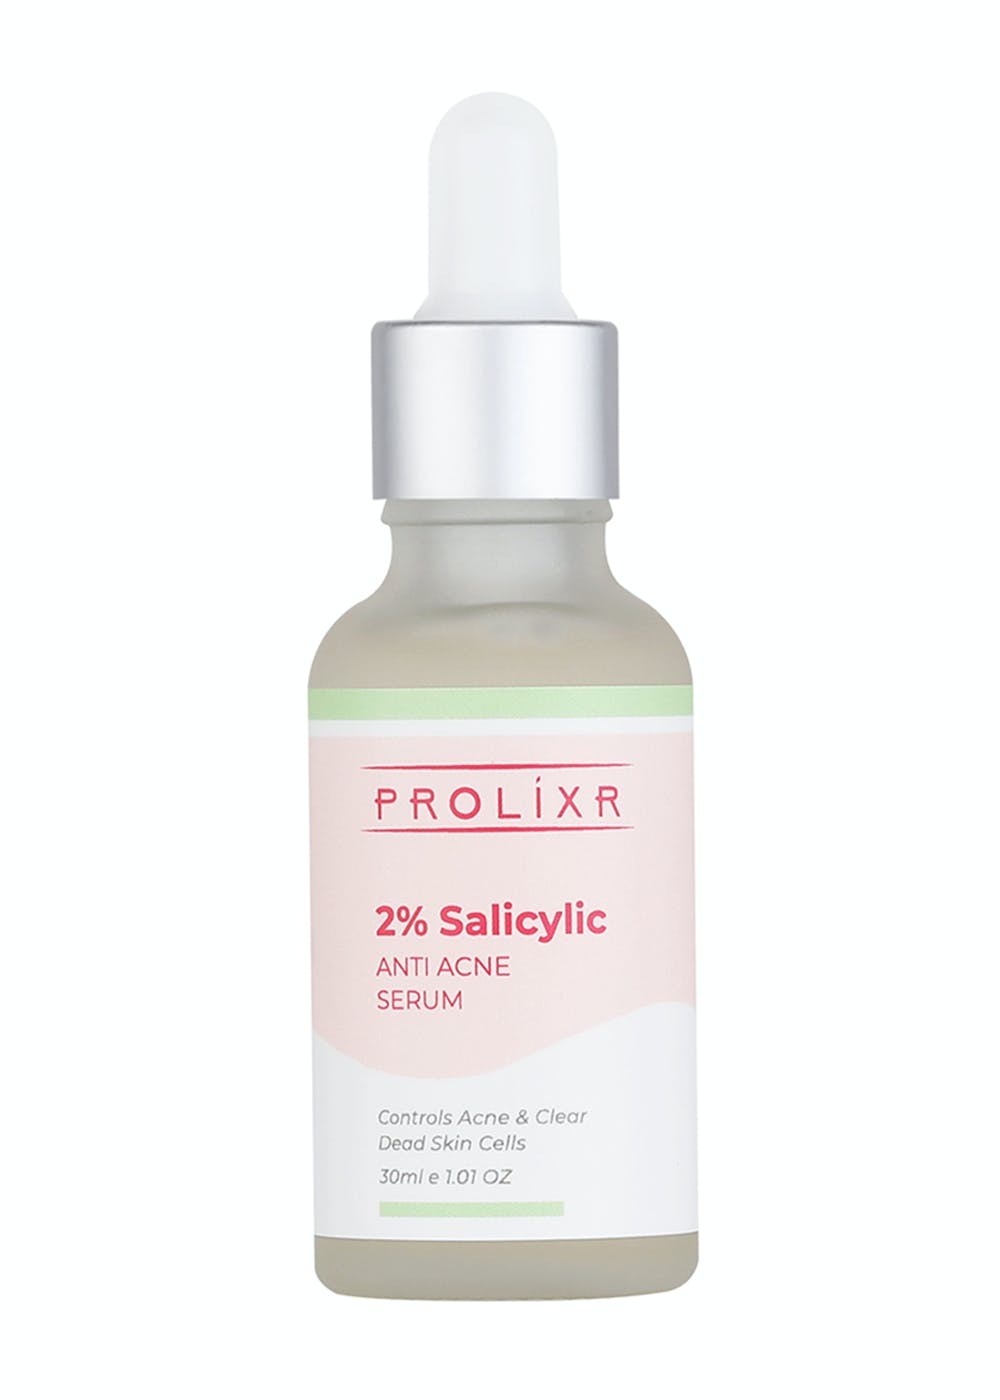 2% Salicylic Anti Acne Serum